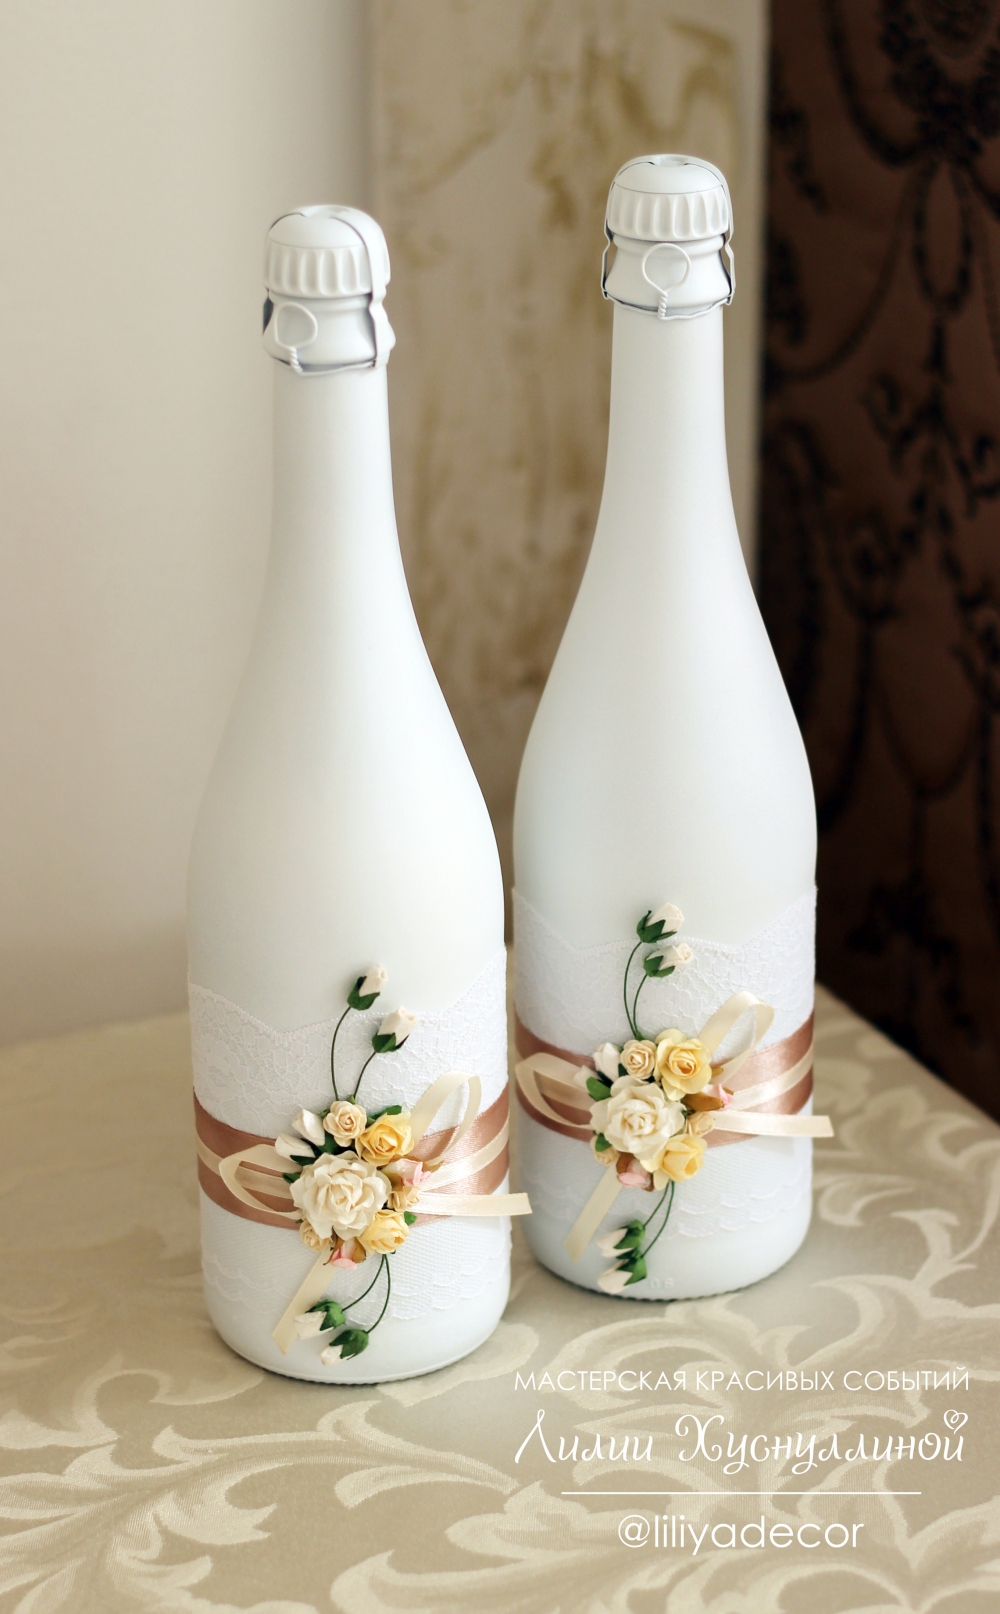 Украшения для бутылок шампанского на свадьбе в изумрудном цвете